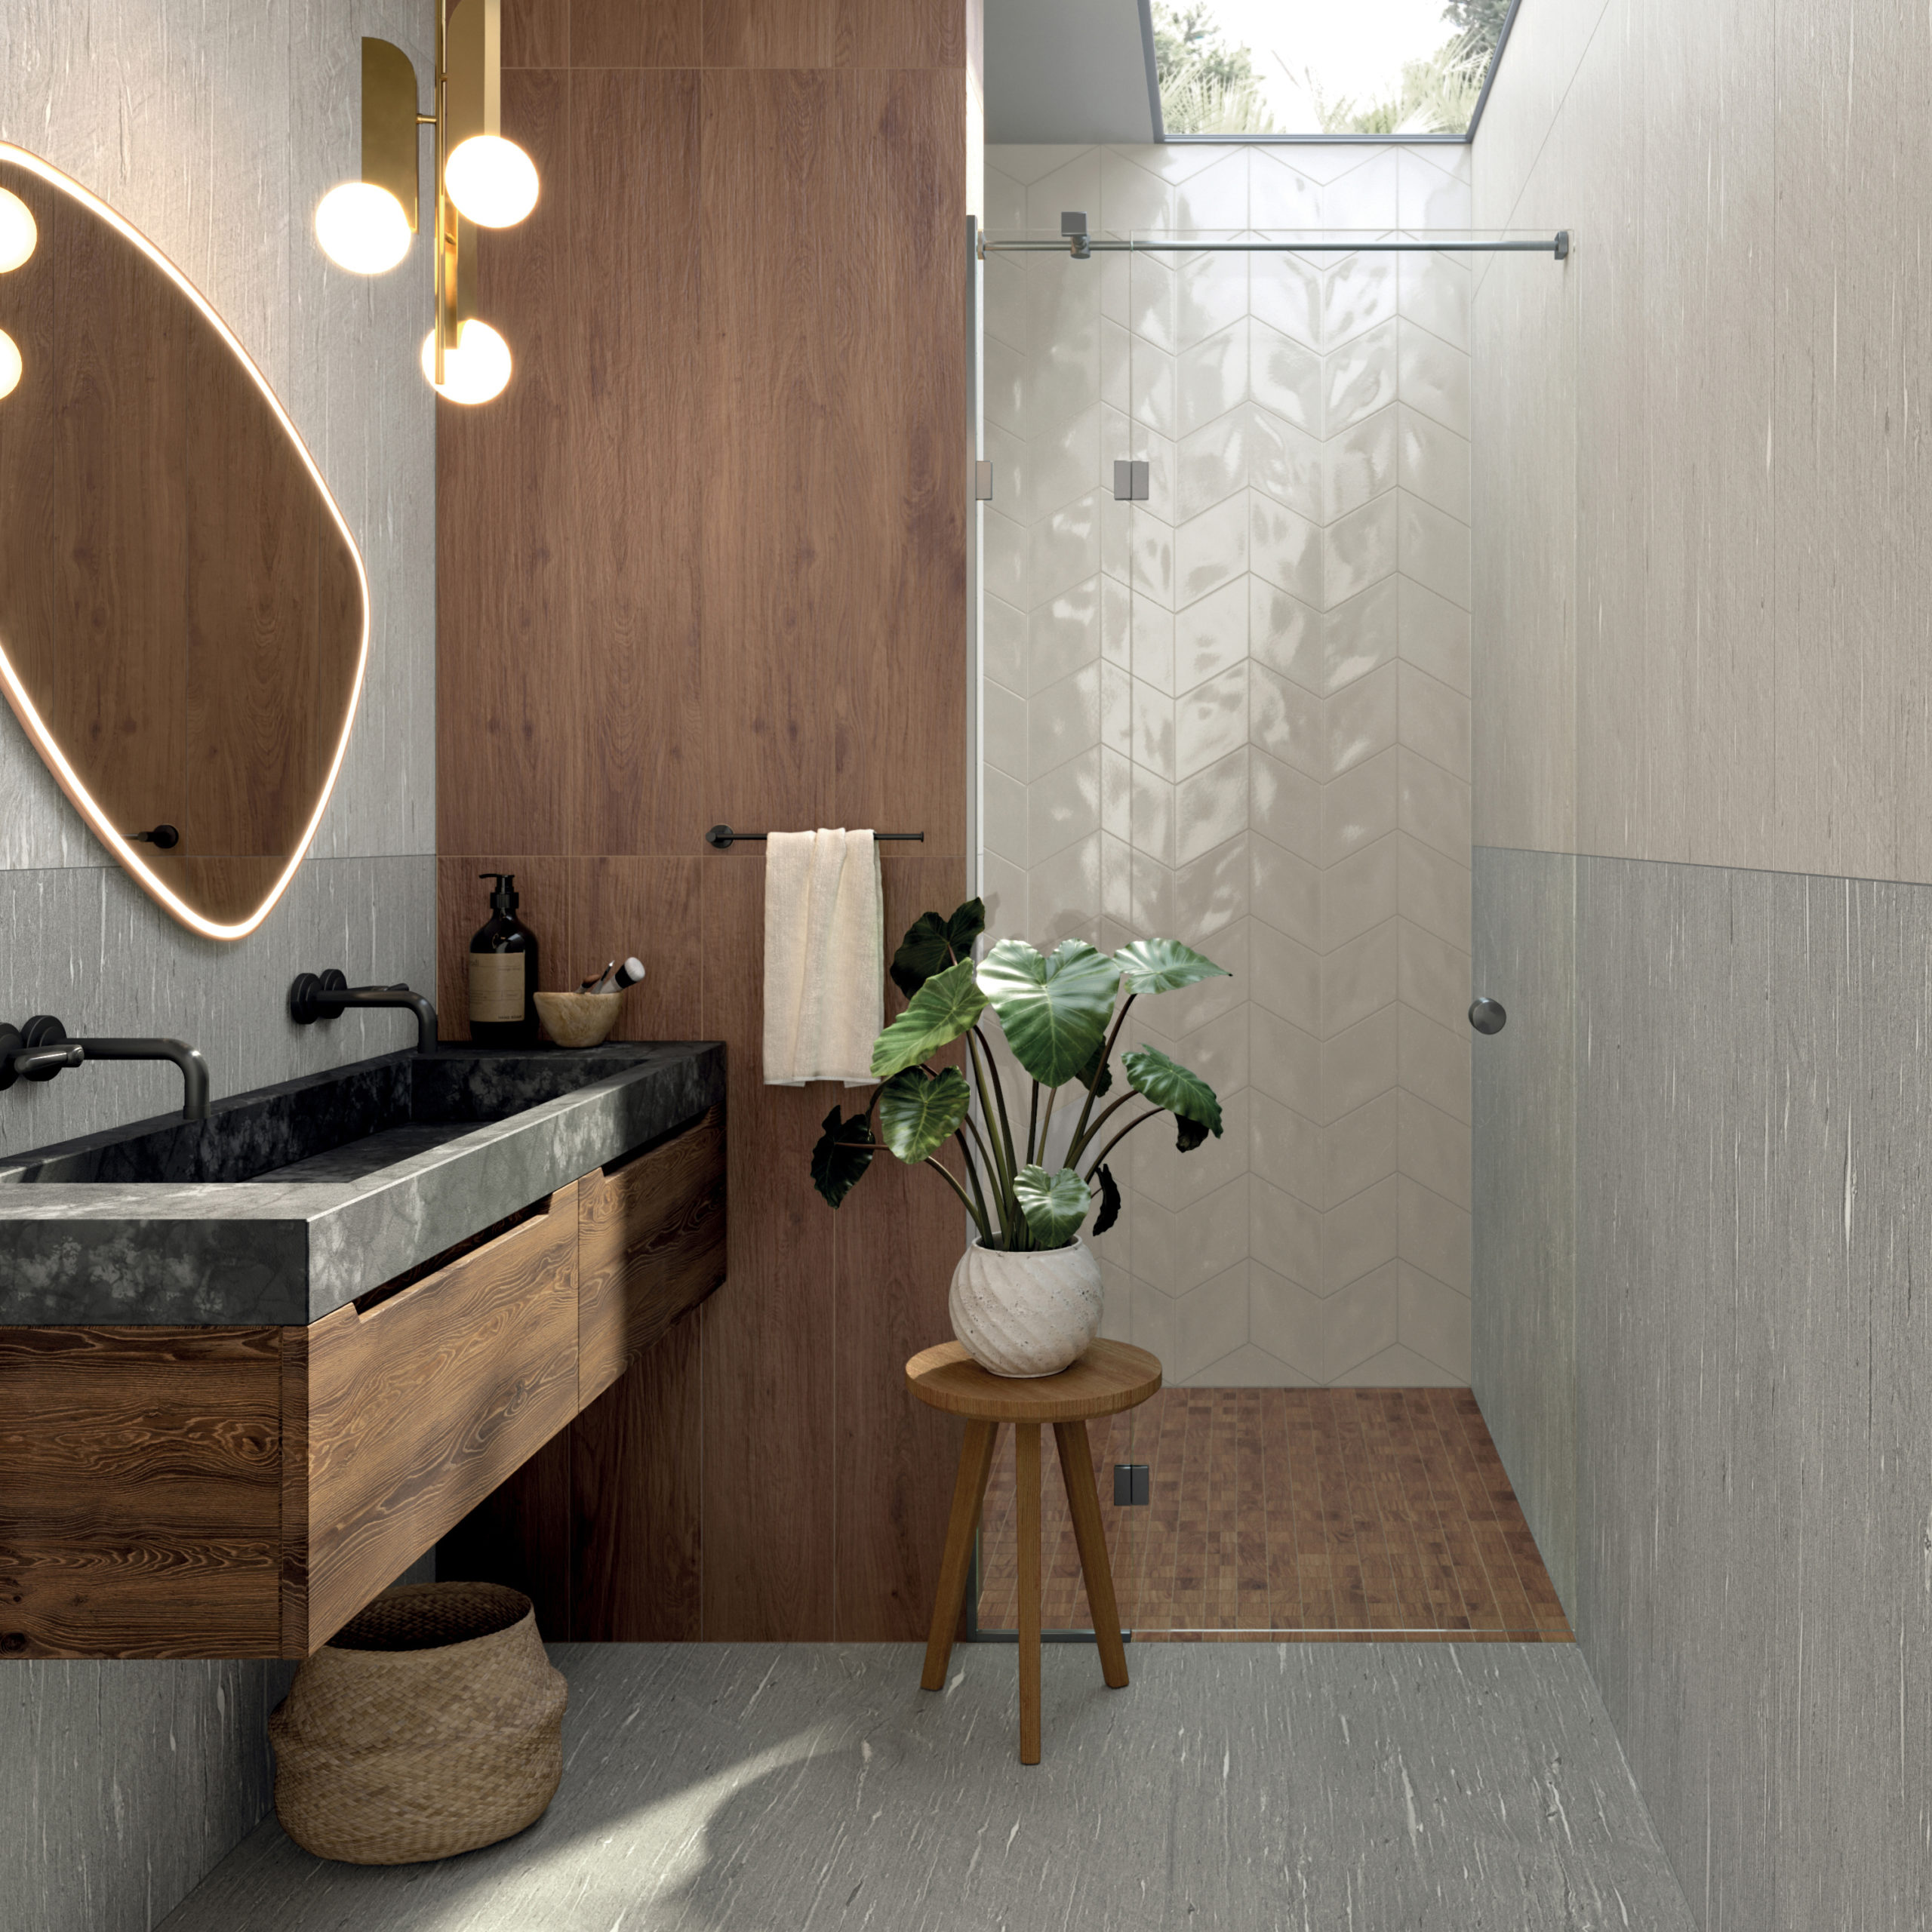 Moderní koupelna s atypickým zrcadlem a obklady v imitaci dřeva